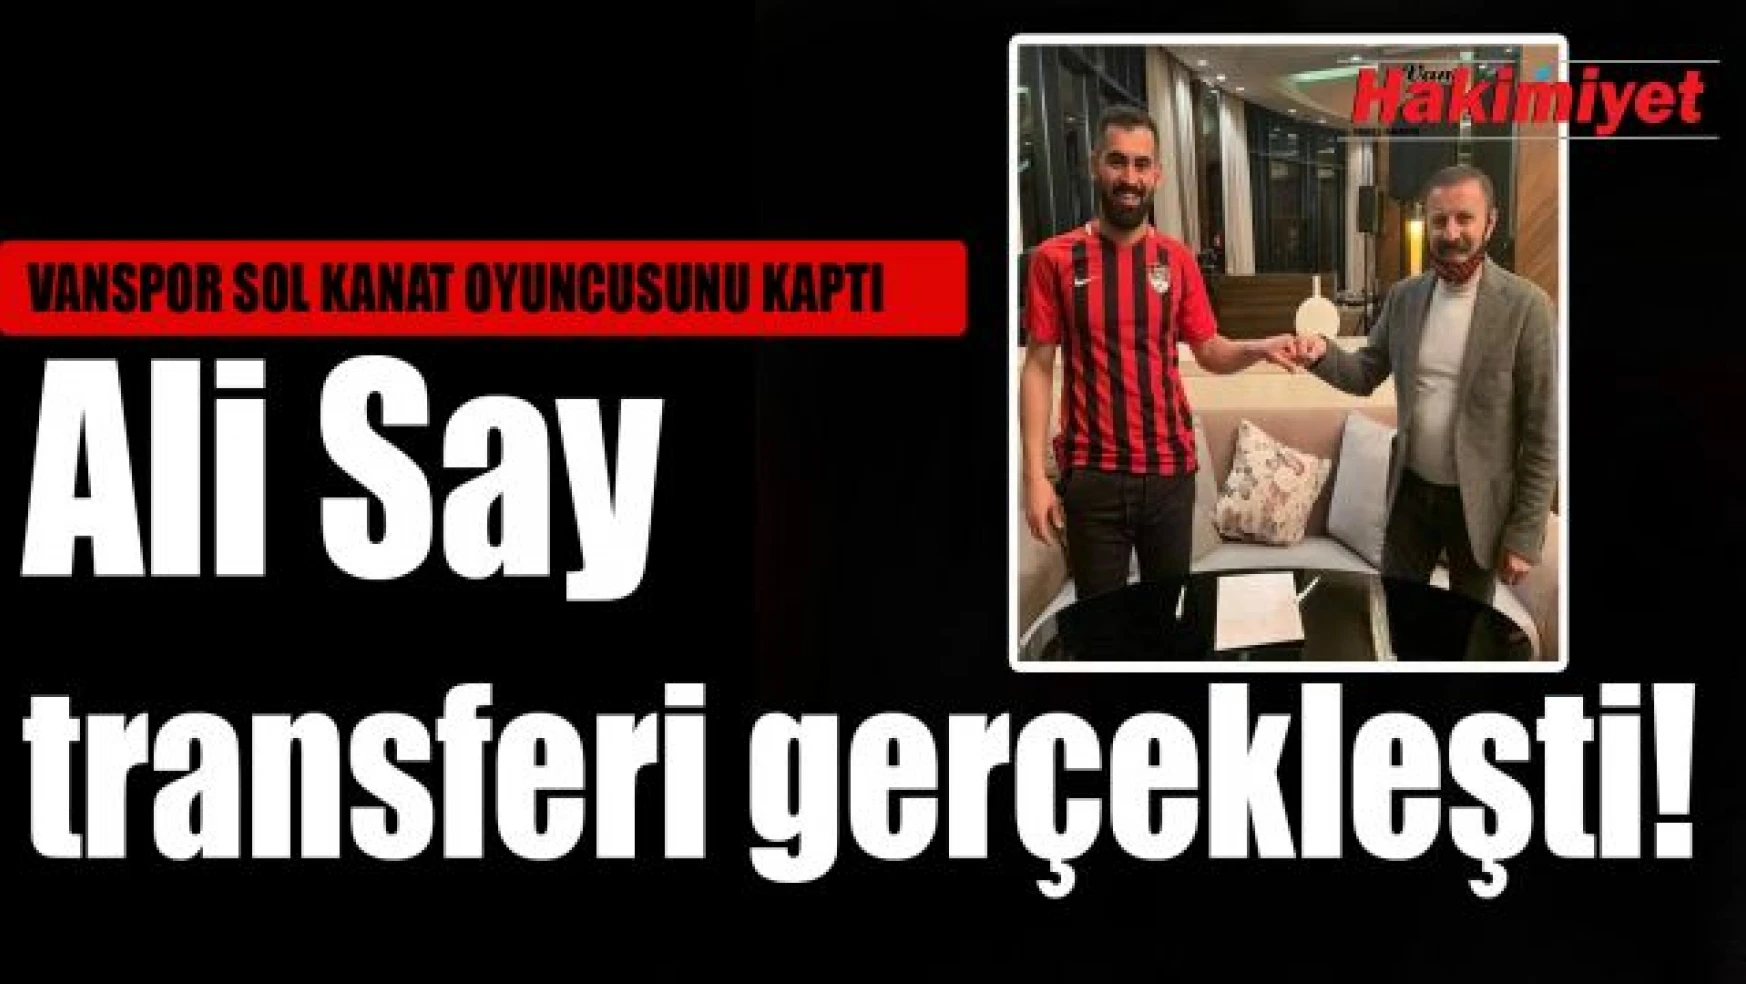 Vanspor, Sivas Belediyespor'dan sol kanat oyuncusu Ali Say'ı renklerine kattı